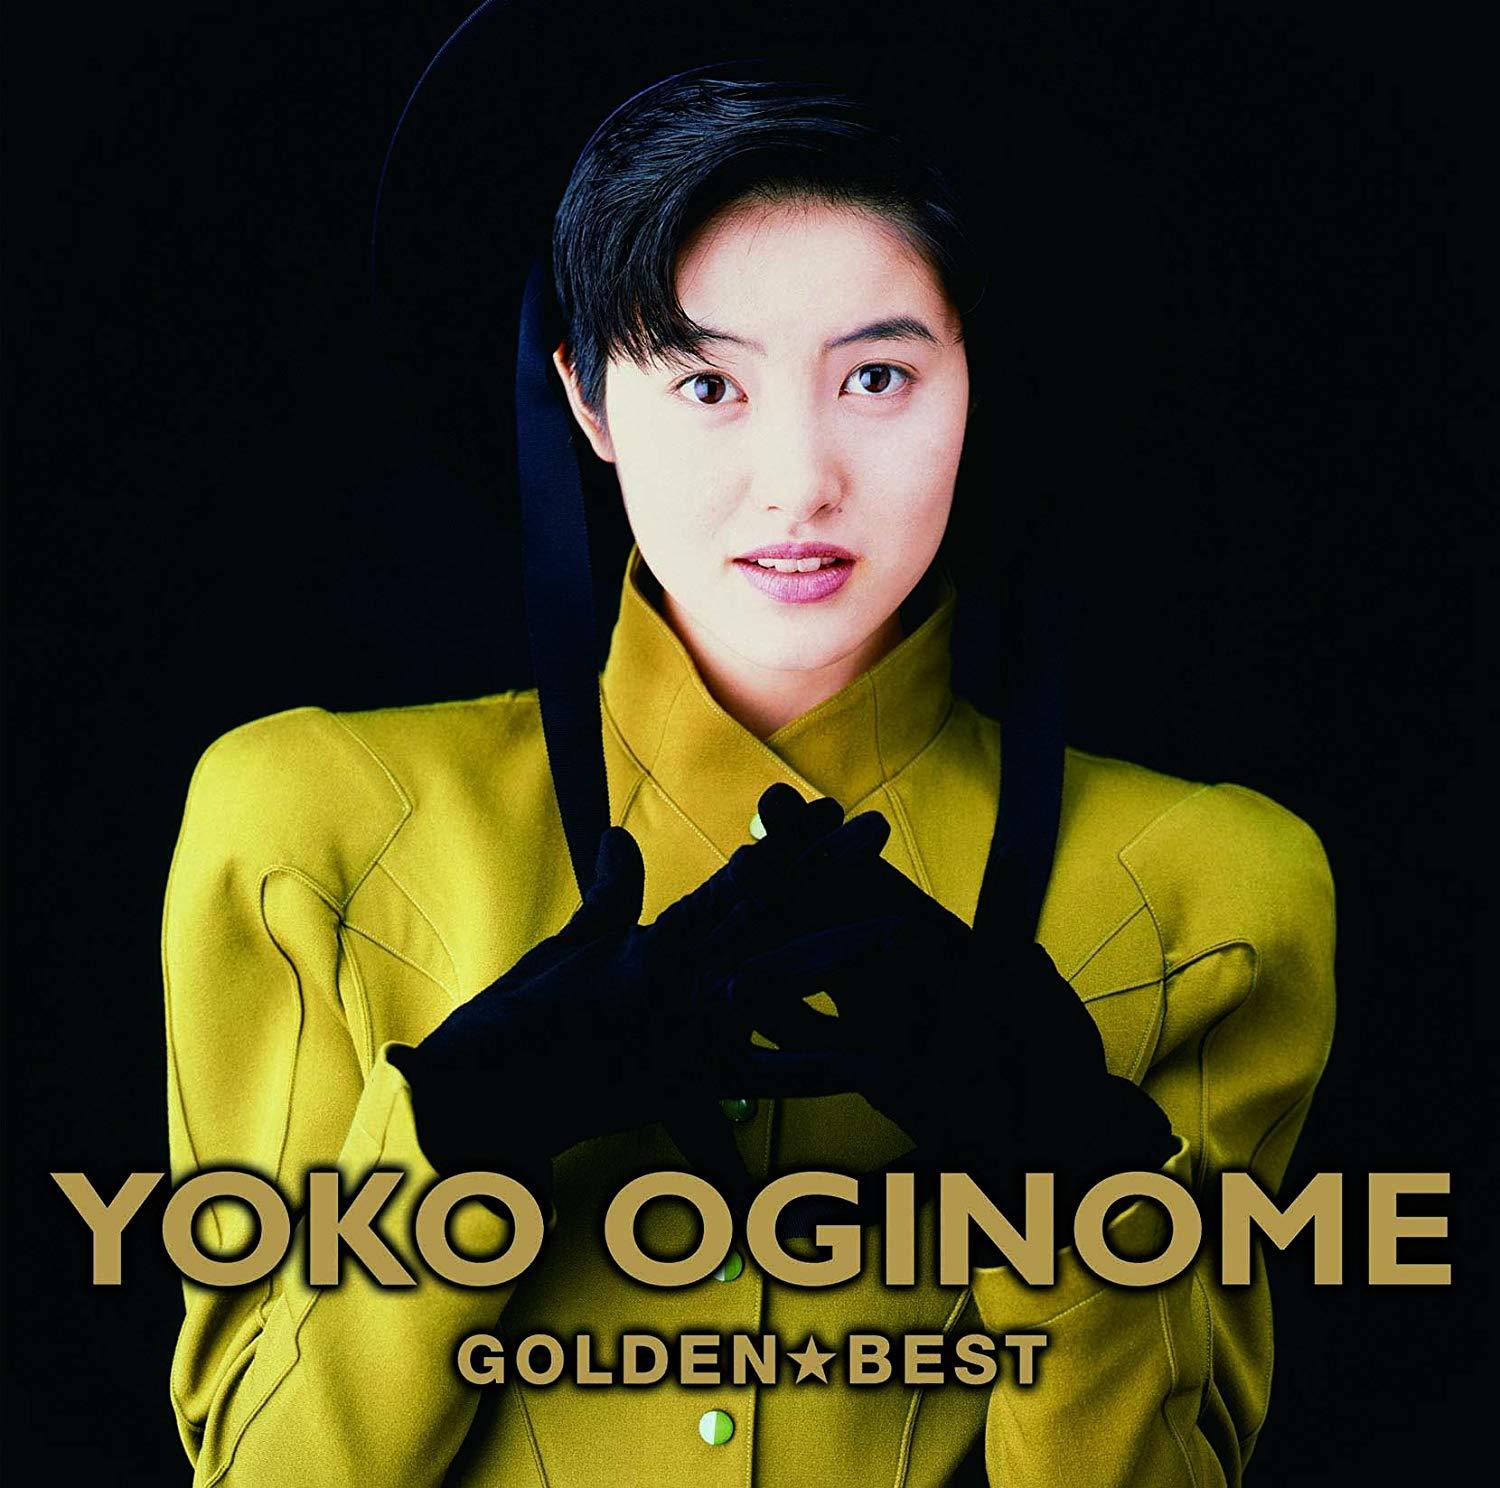 荻野目洋子 (Yoko Oginome) - ゴールデン☆ベスト(Golden☆Best) [Mora FLAC 24bit/96kHz]